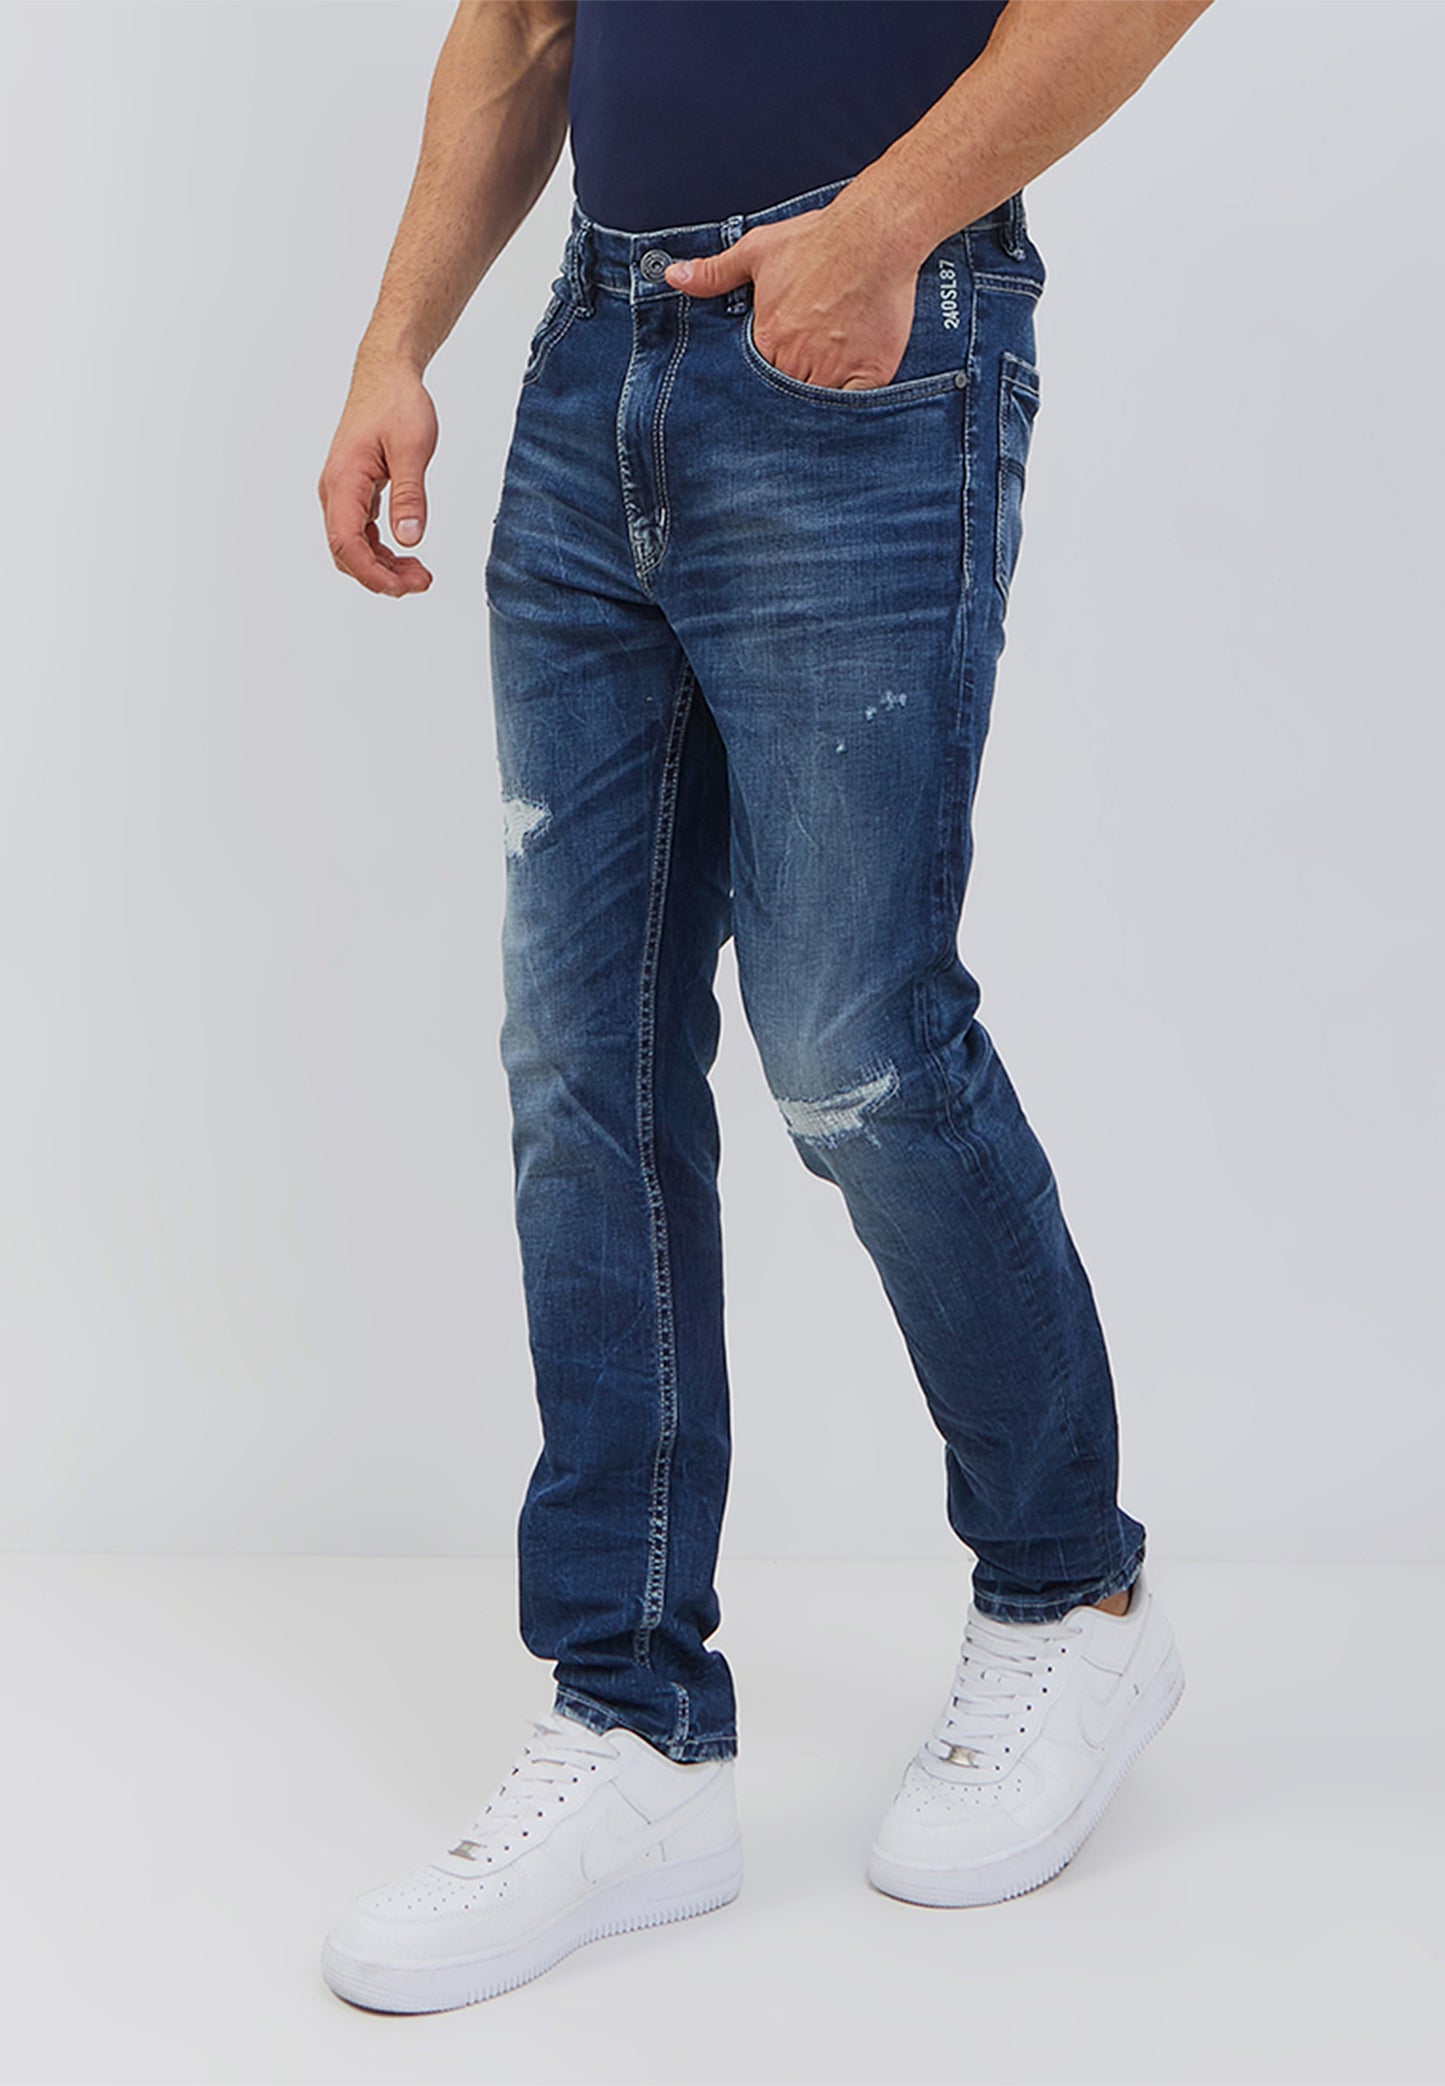 Osella Thomas Slim Fit Jeans In Medium Indigo Blue